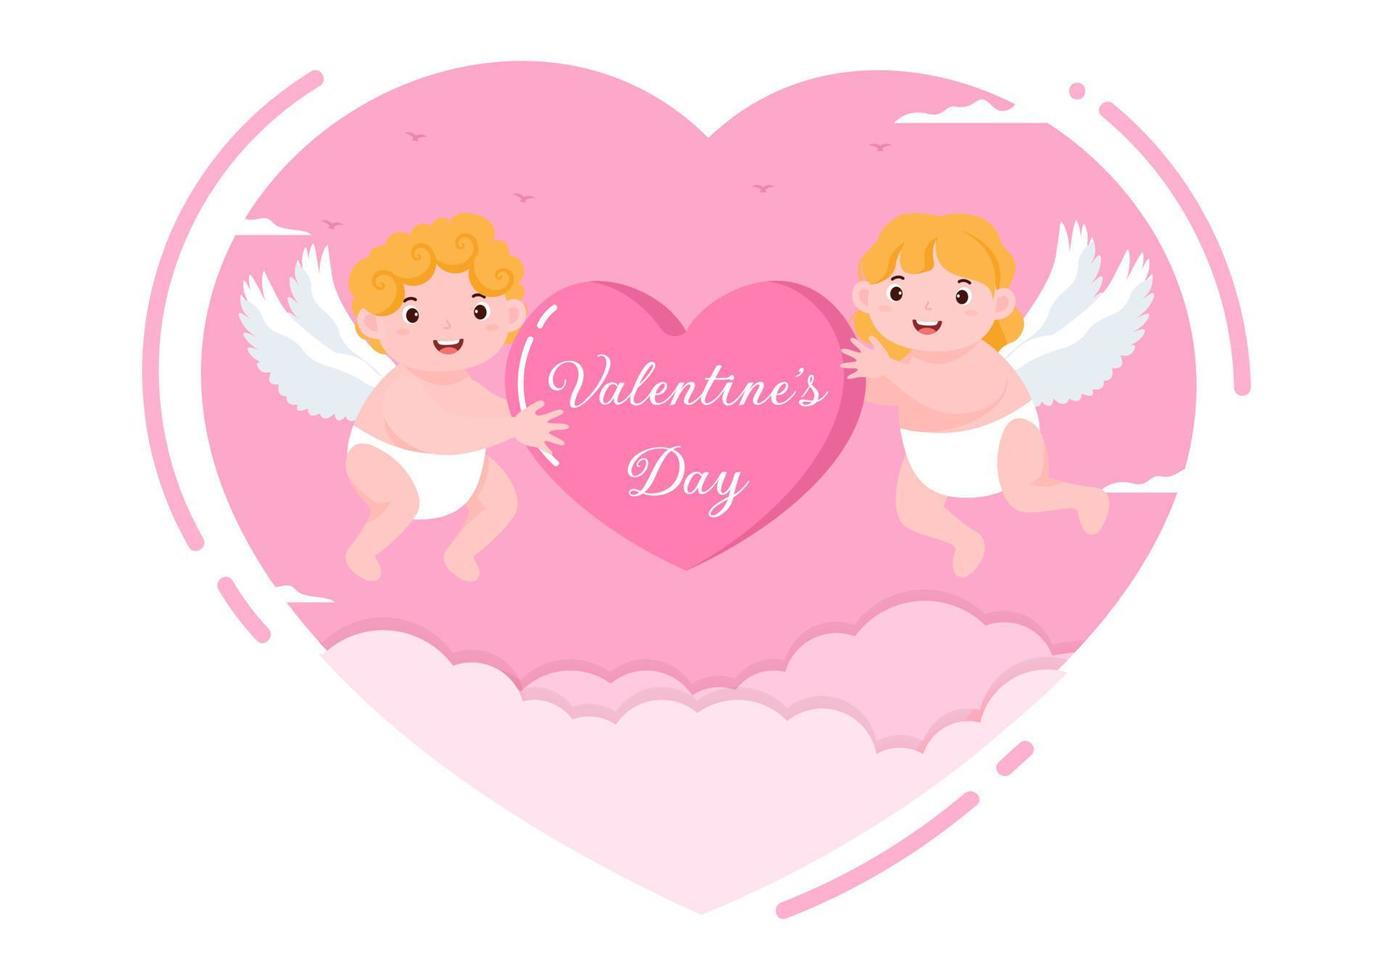 flache Designillustration des glücklichen Valentinstags, die am 17. Februar mit nettem Amor, Engeln auf Wolken für Liebesgrußkarte gedacht wird vektor